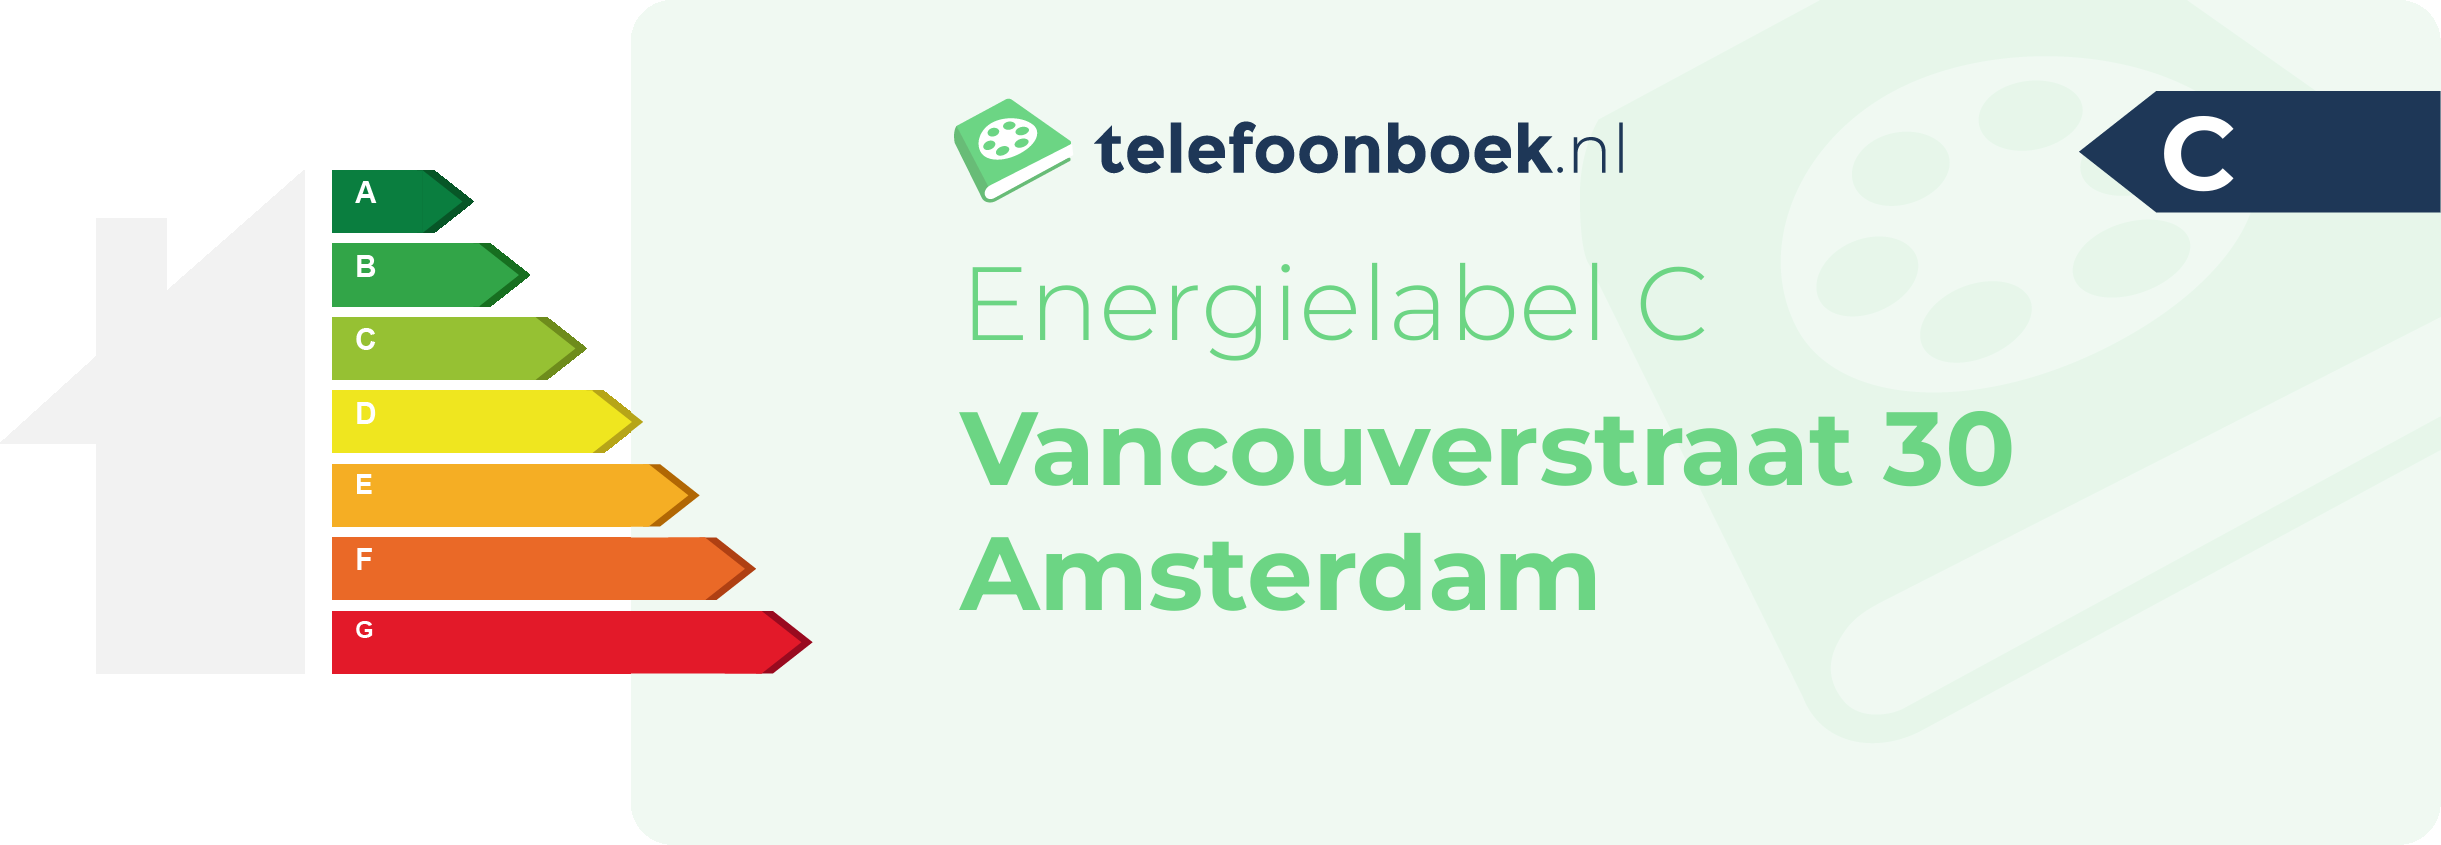 Energielabel Vancouverstraat 30 Amsterdam